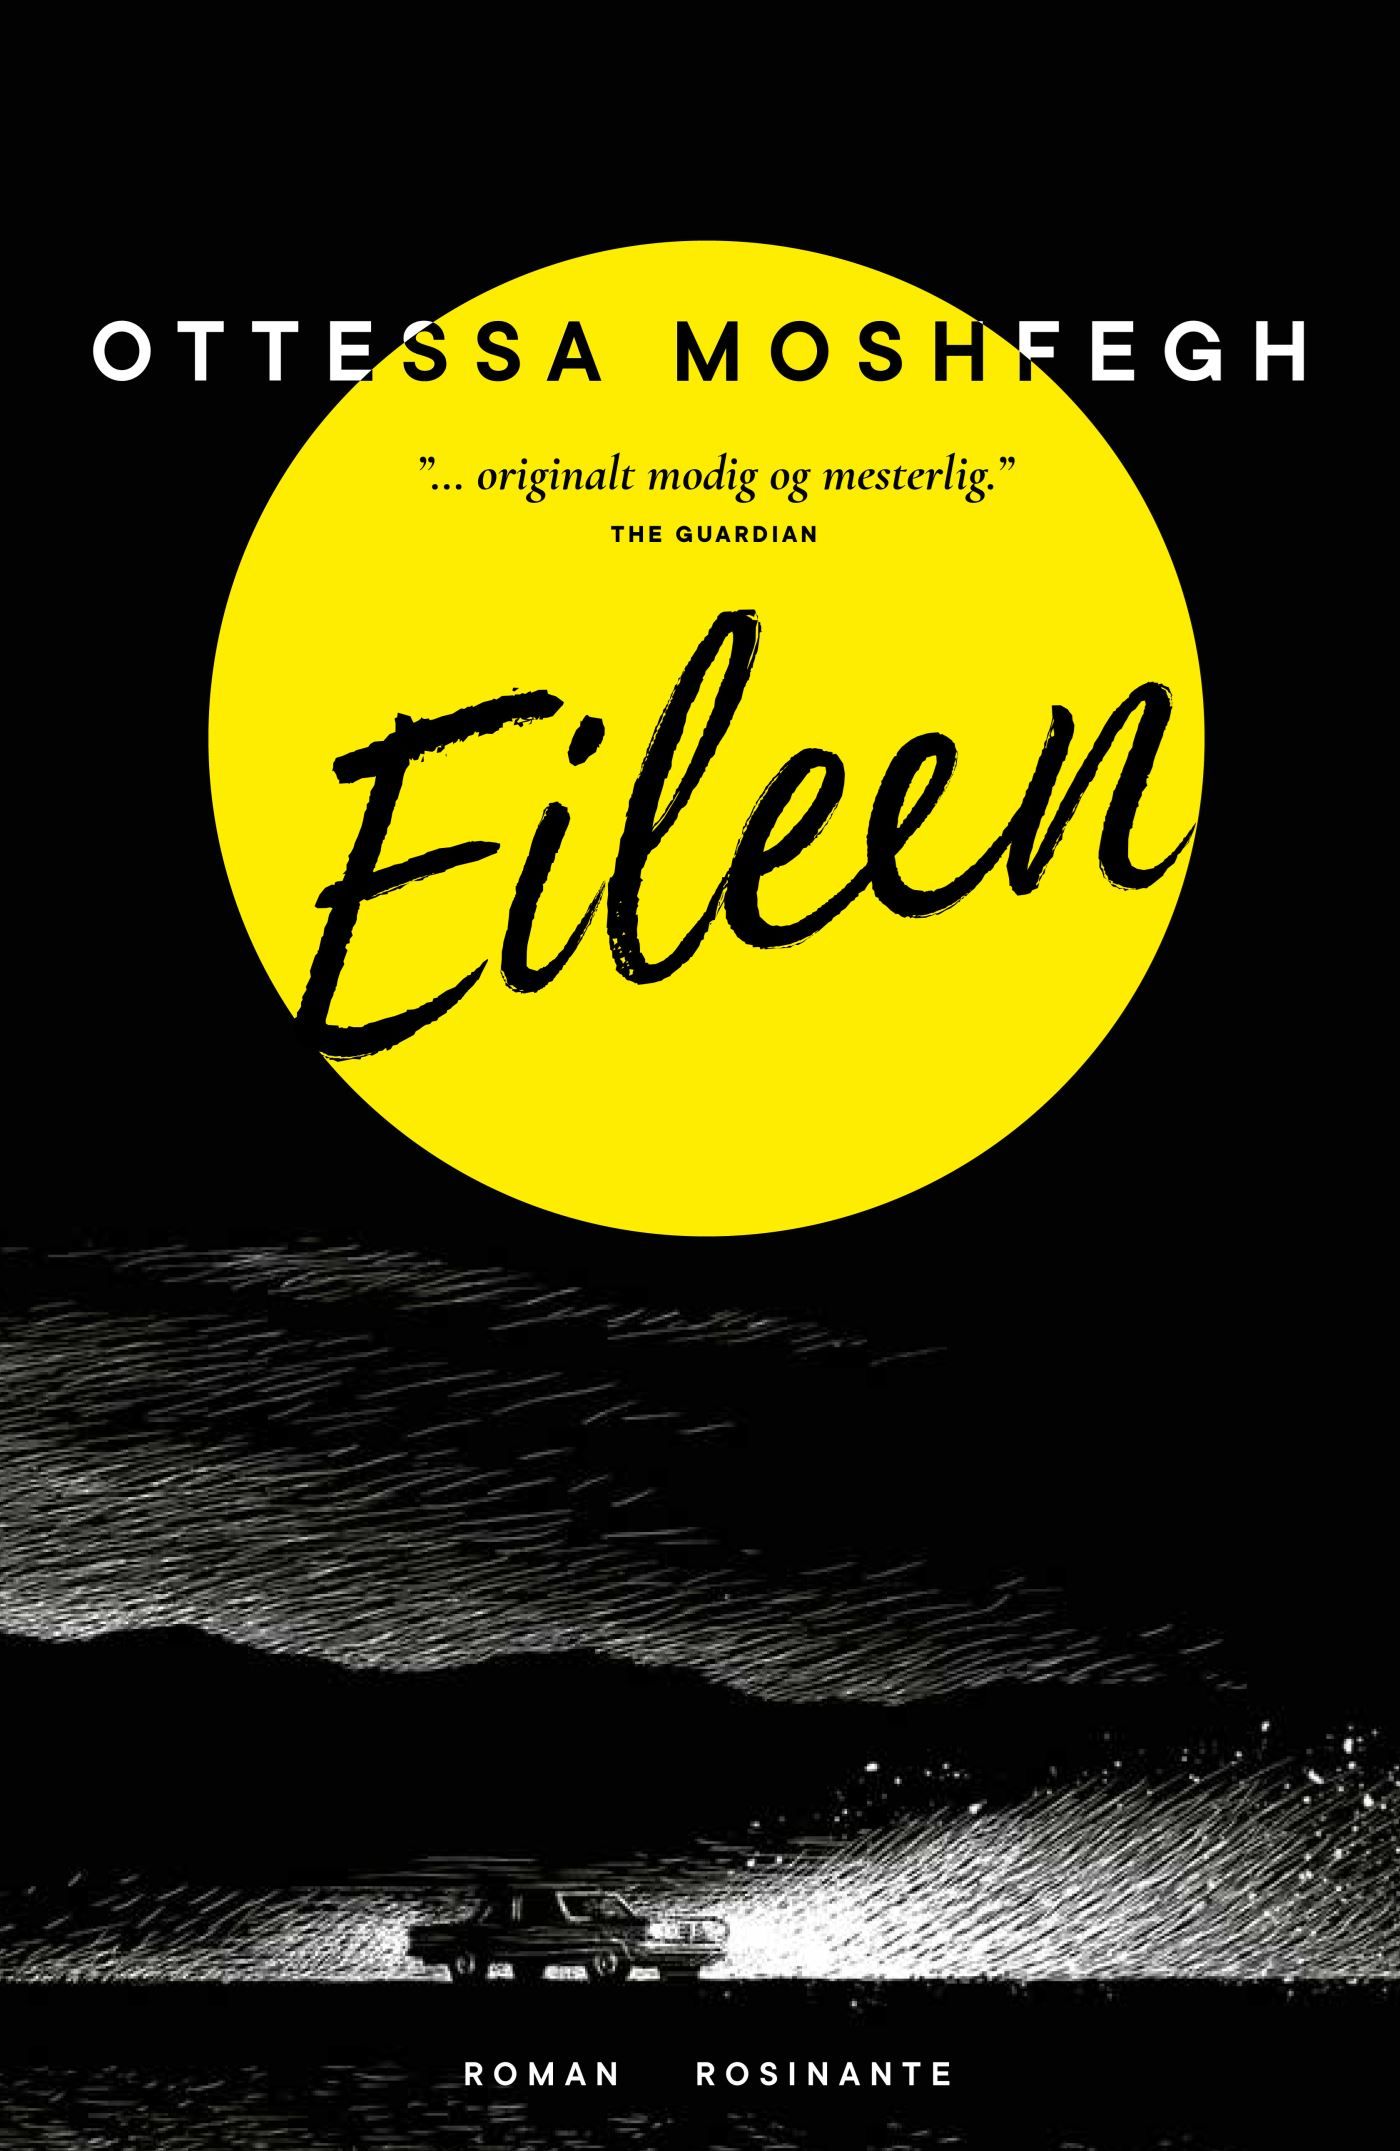 Eileen, lydbog af Ottessa Moshfegh